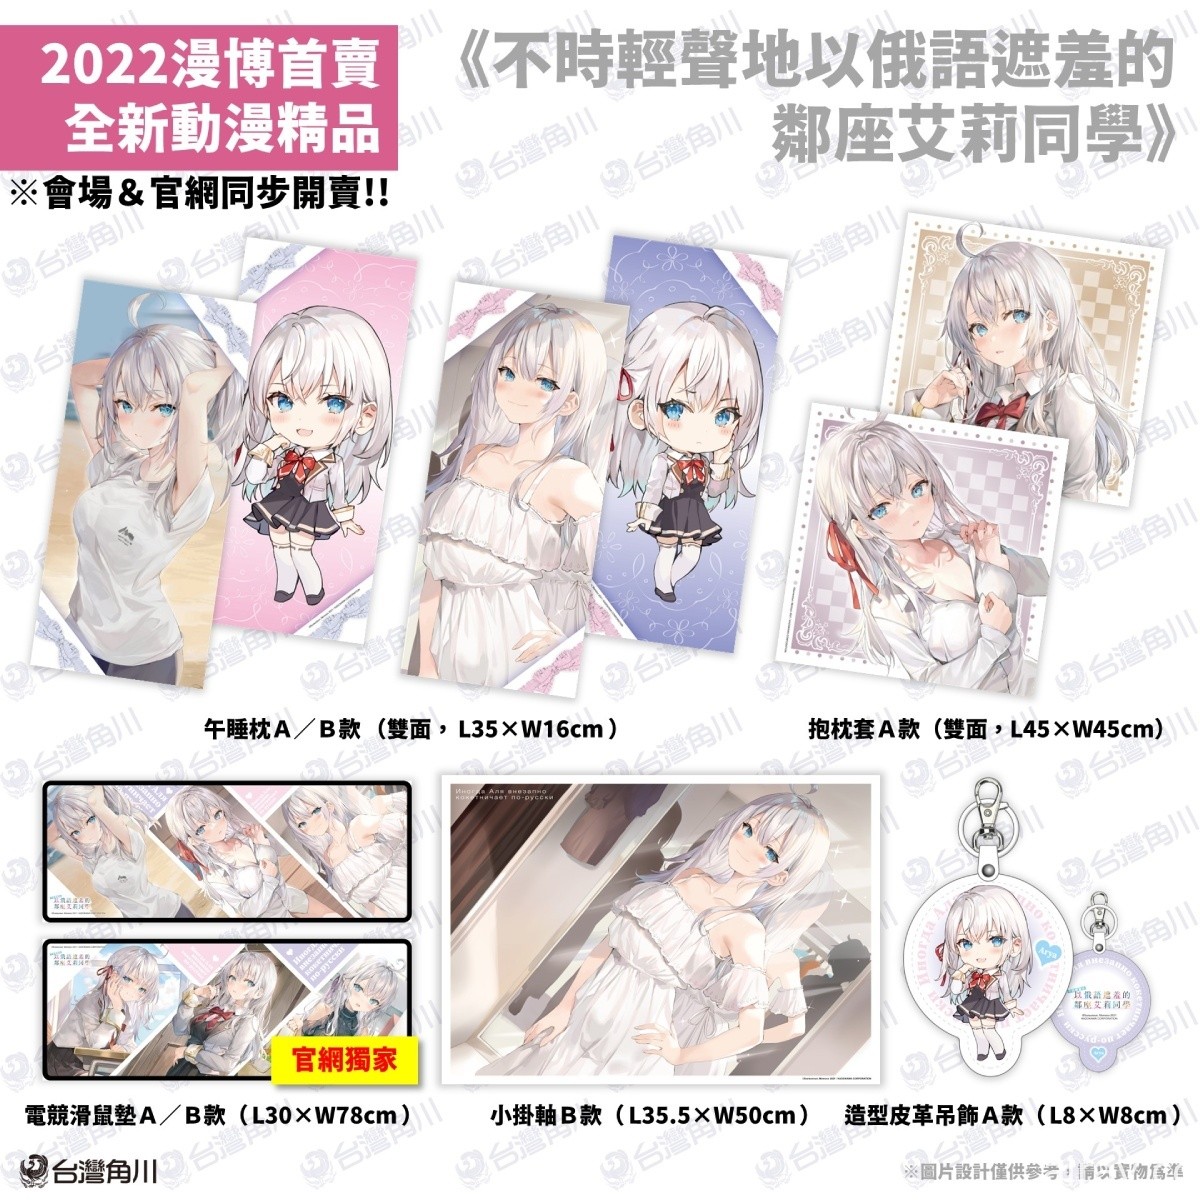 【漫博 22】台湾角川公开“2022 漫画博览会”动漫周边商品资讯